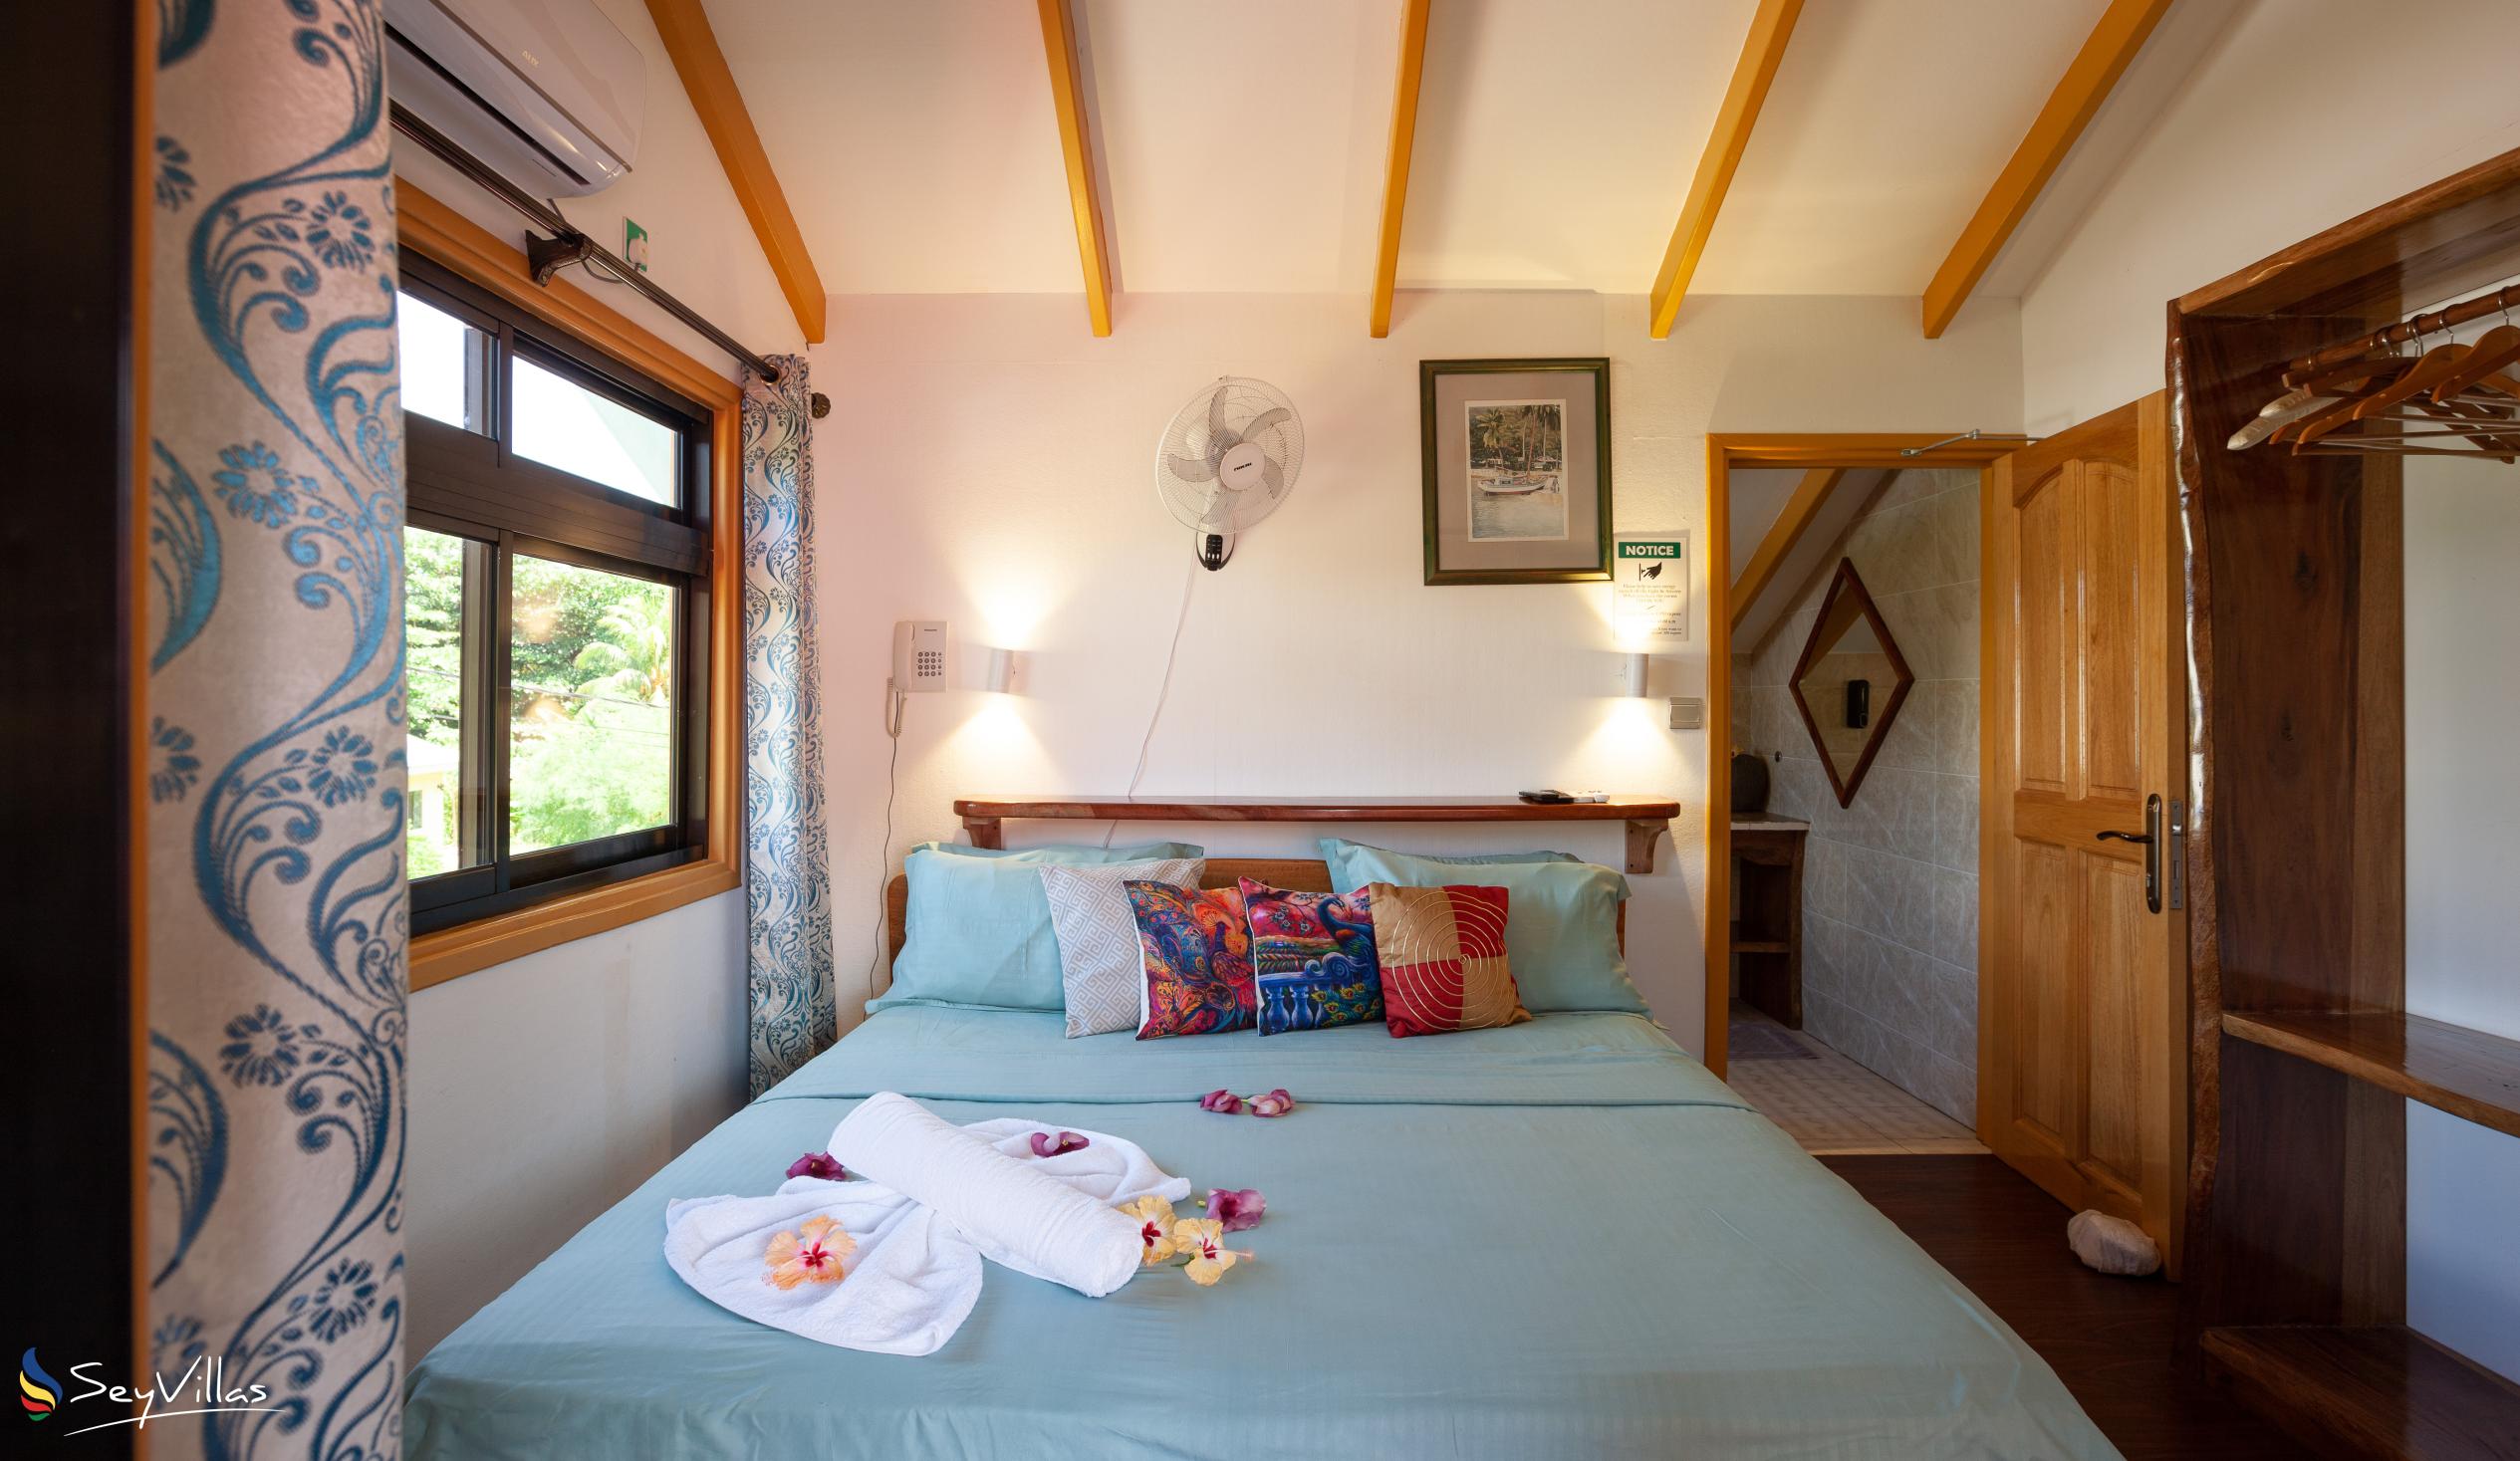 Photo 38: Bwaver Cottage - Superior Apartment - La Digue (Seychelles)